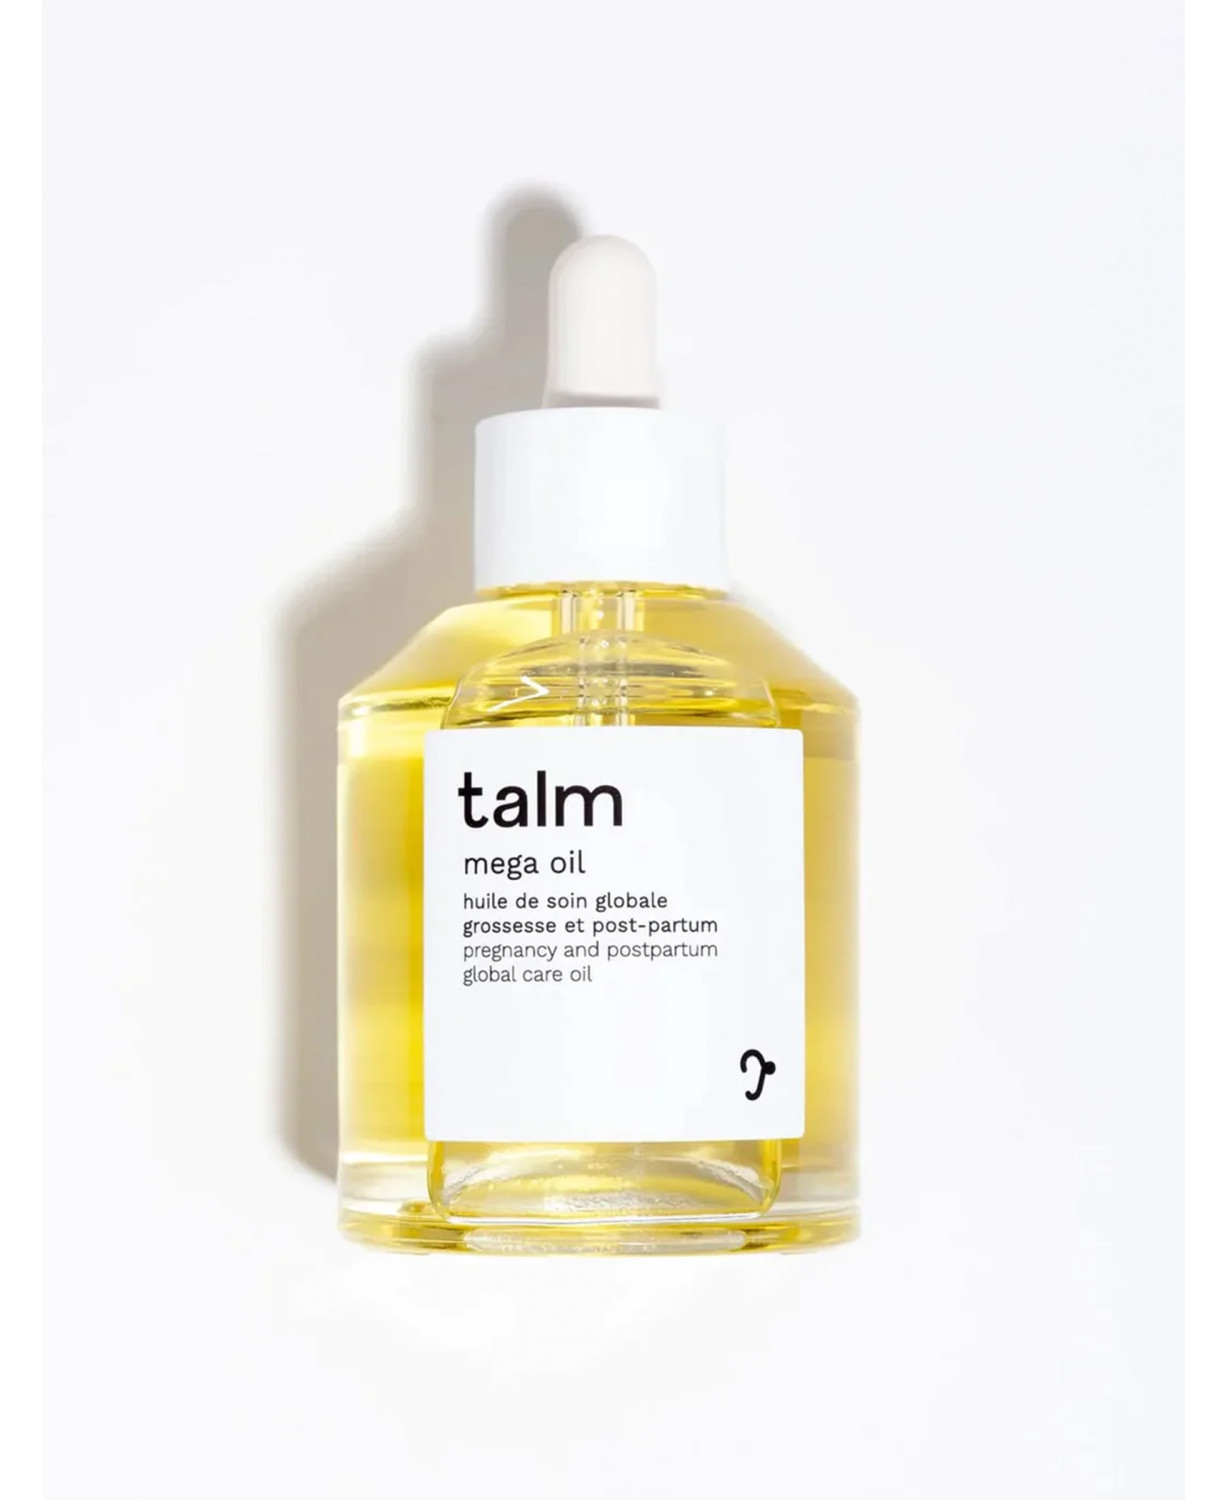 Talm organic pregnancy and postpartum care oil